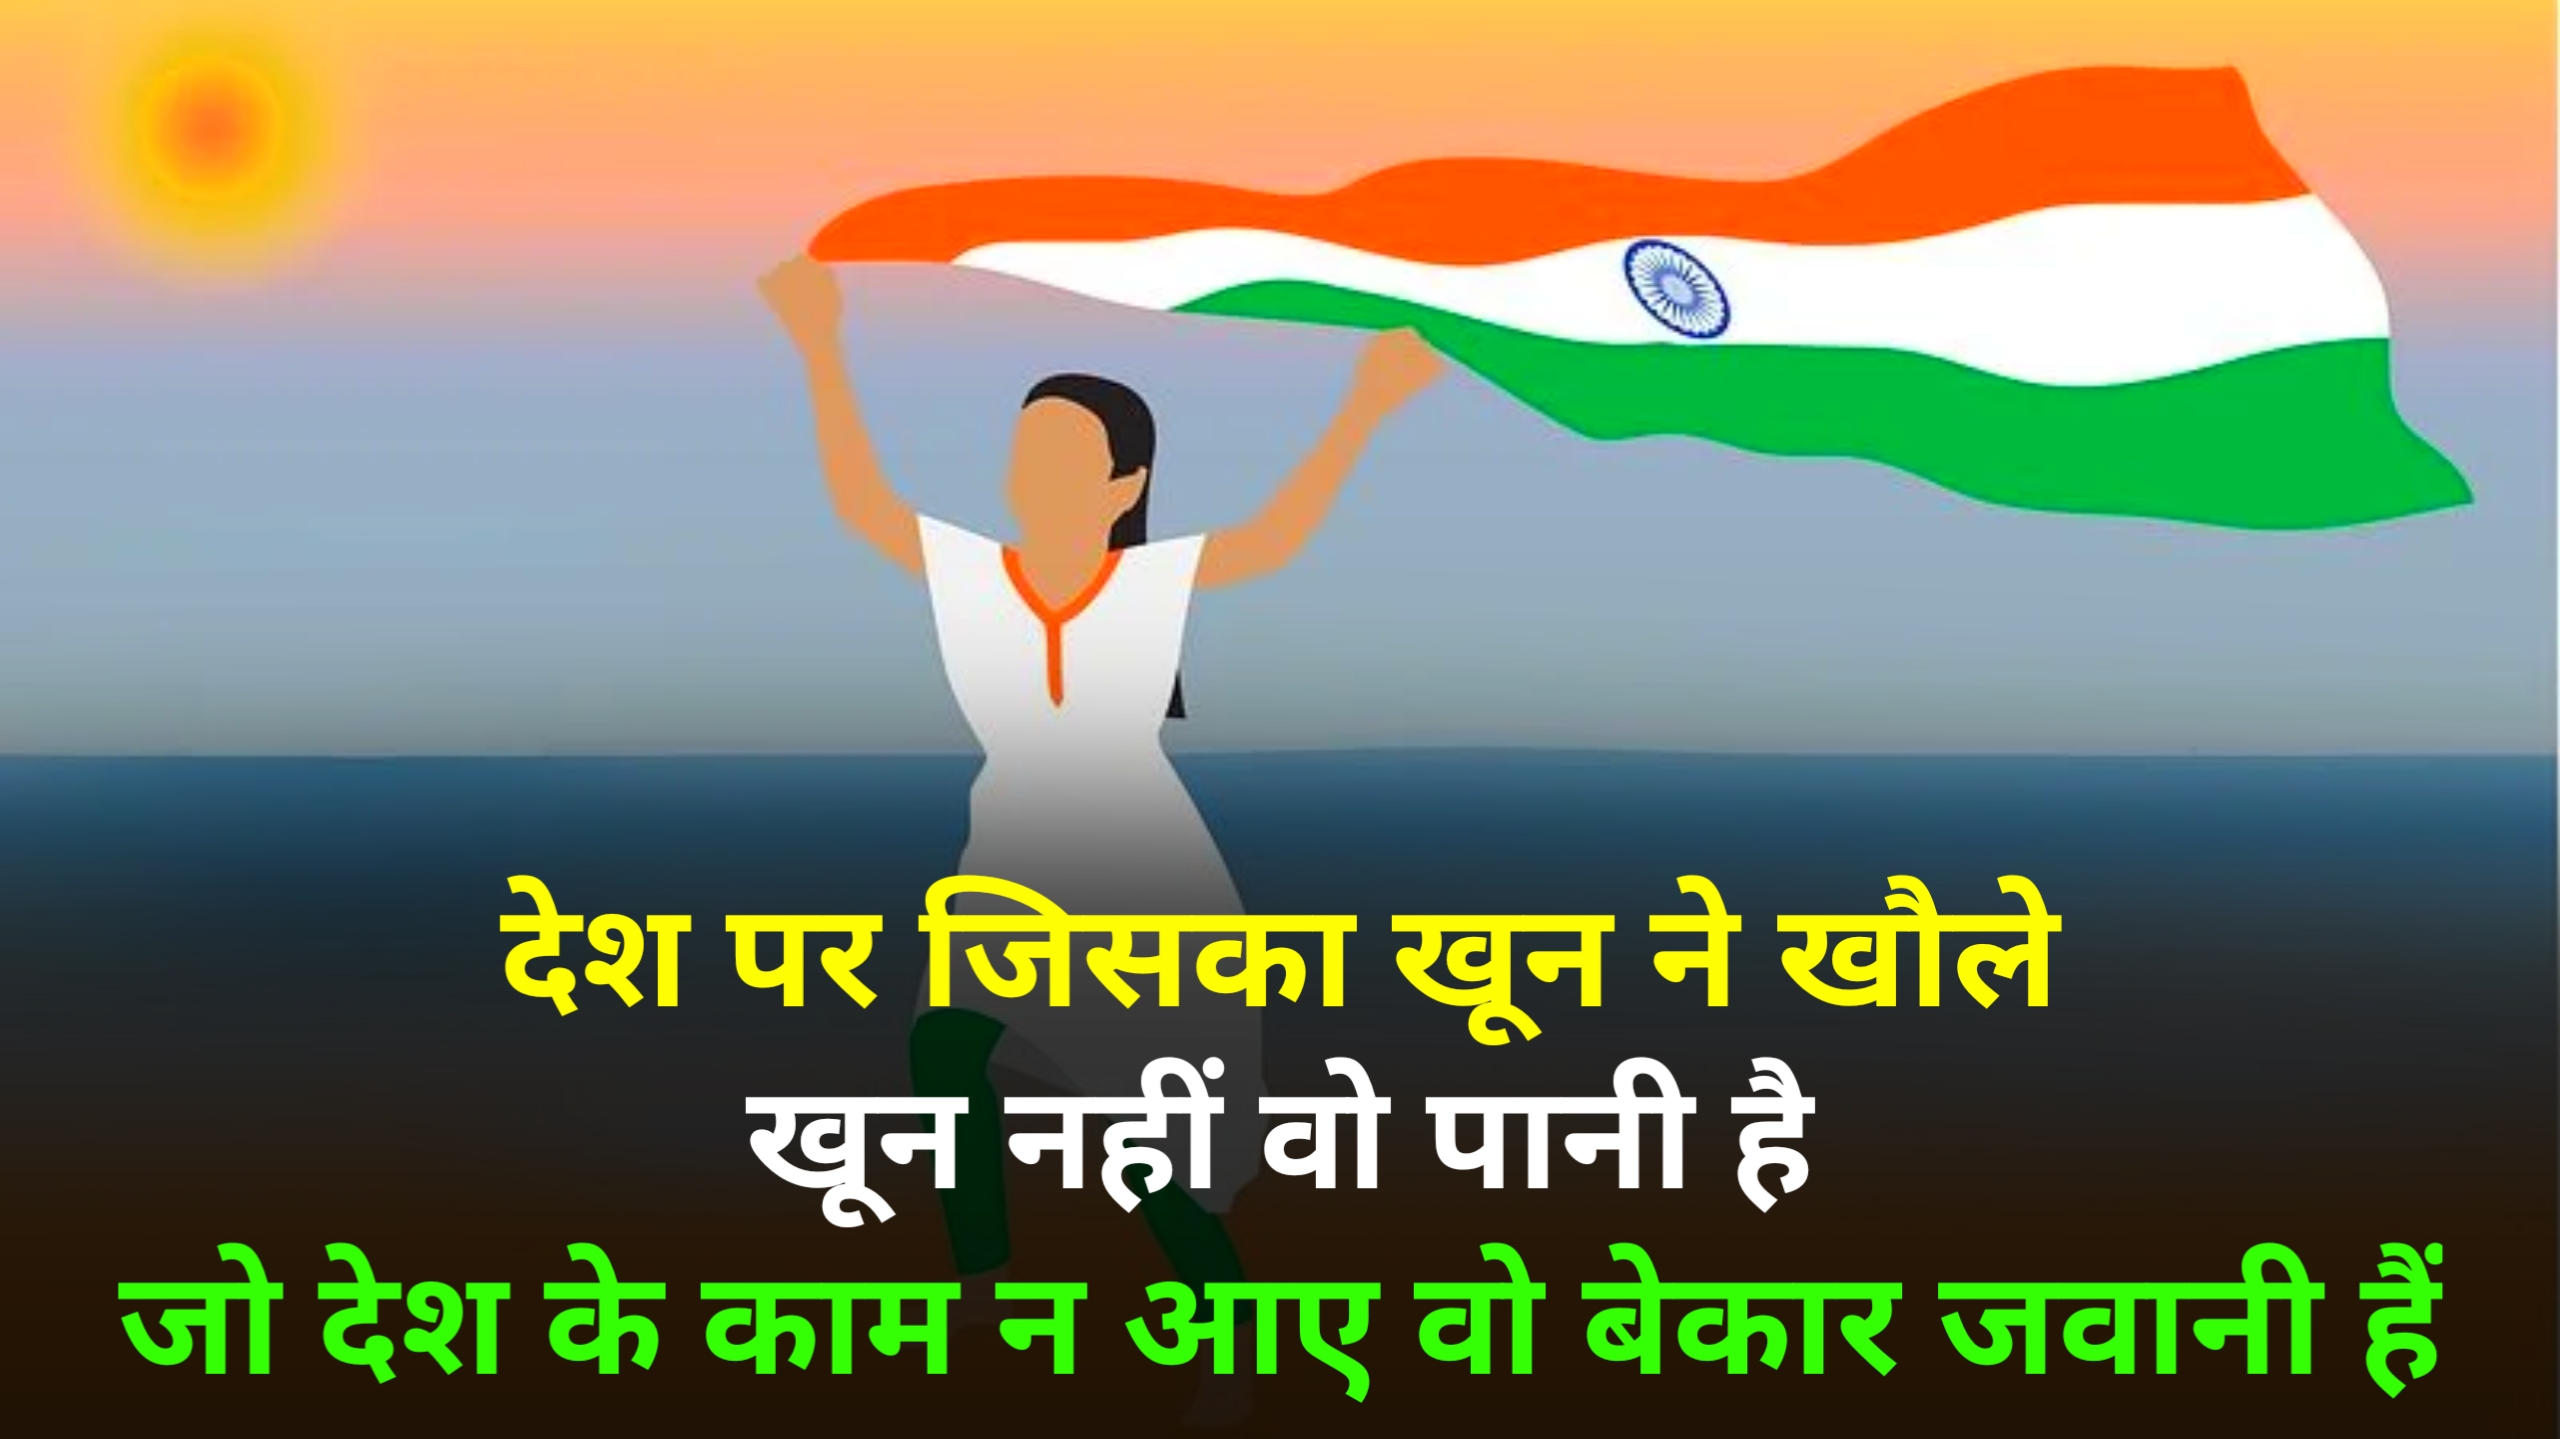 15 अगस्त पर शायरी 2023 | स्वतंत्रता दिवस पर शायरी 2023 | Happy Independence day shayari in Hindi 2023,independence day shayari status quotes wishes in hindi 2023,15 अगस्त की शुभकामनाएं भेजें 2023